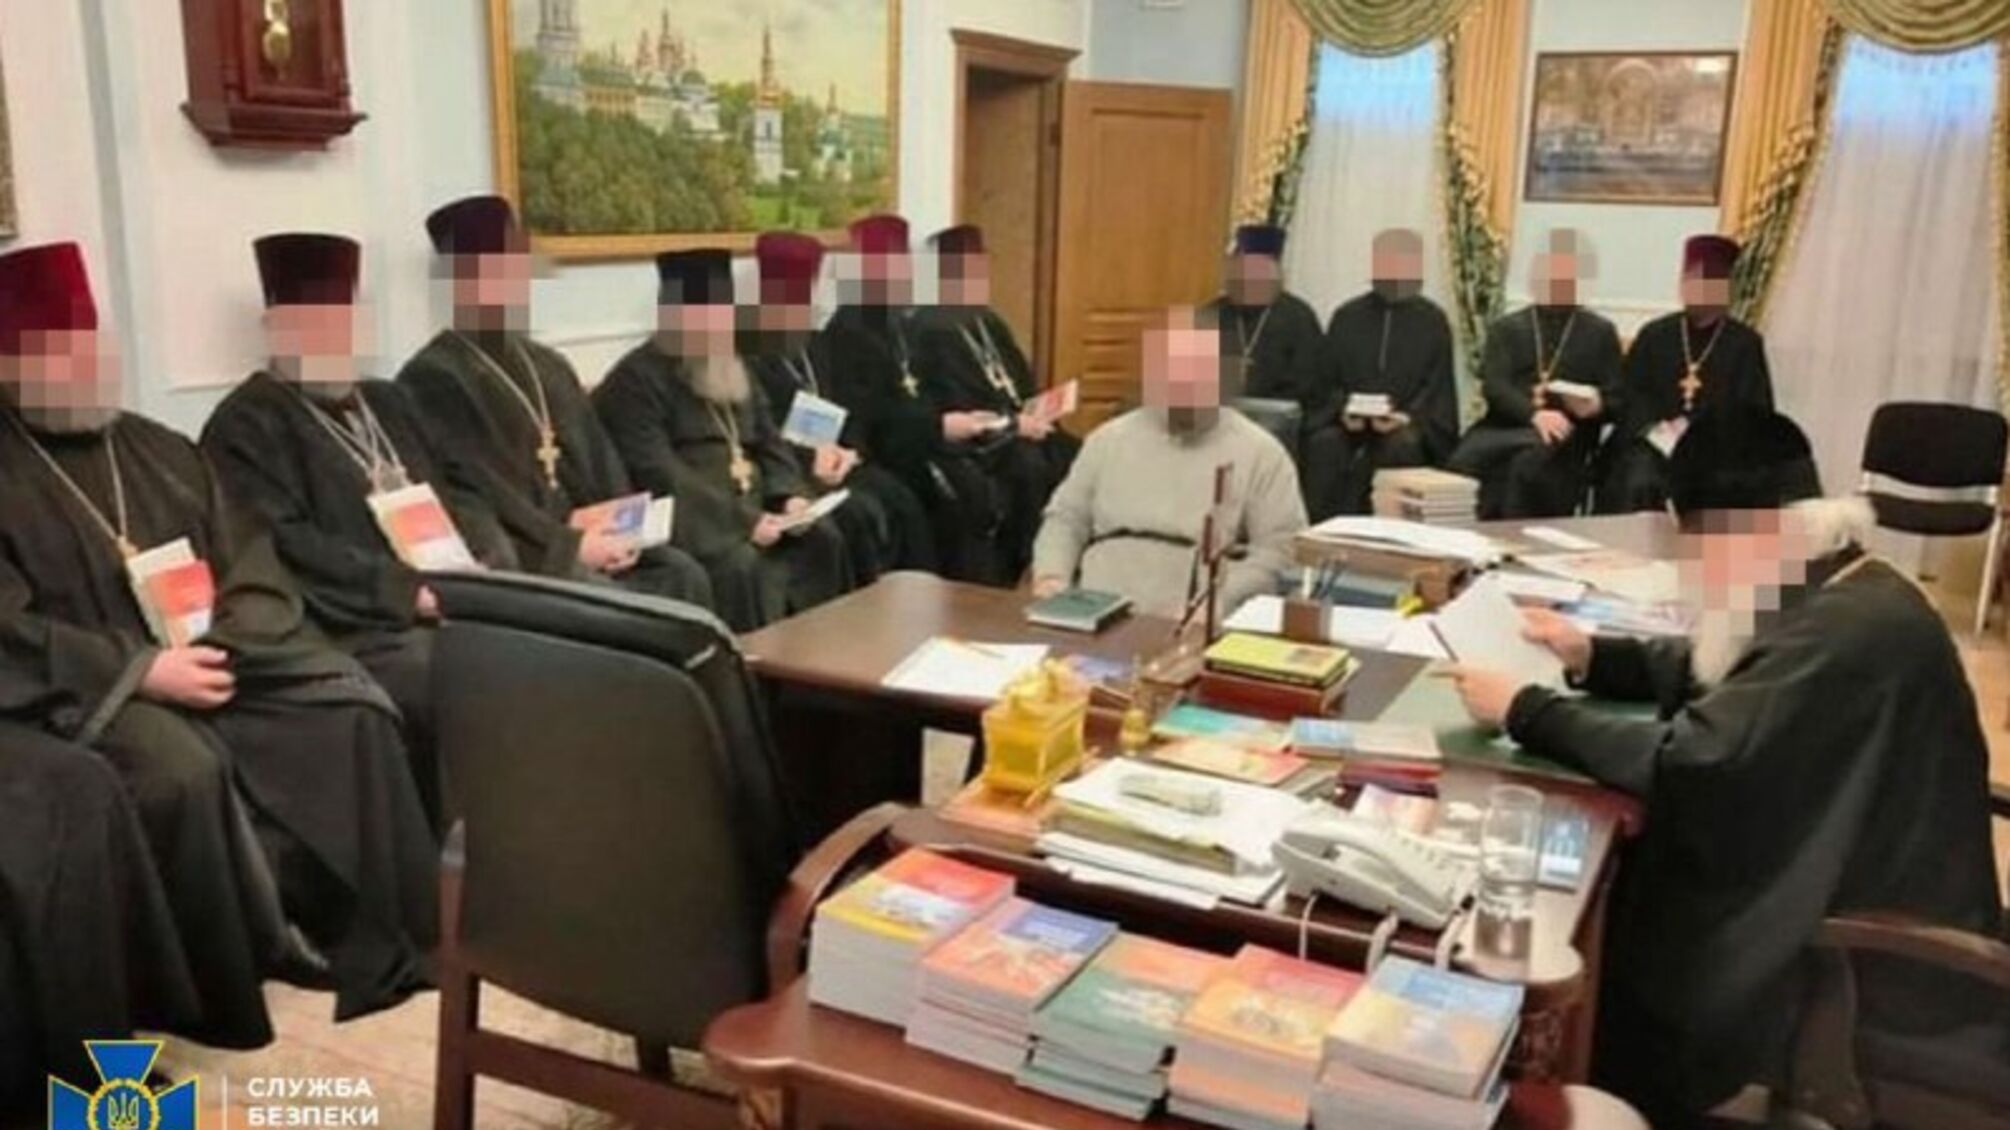 В Кропивницком провела обыски у митрополита упц московского патриархата